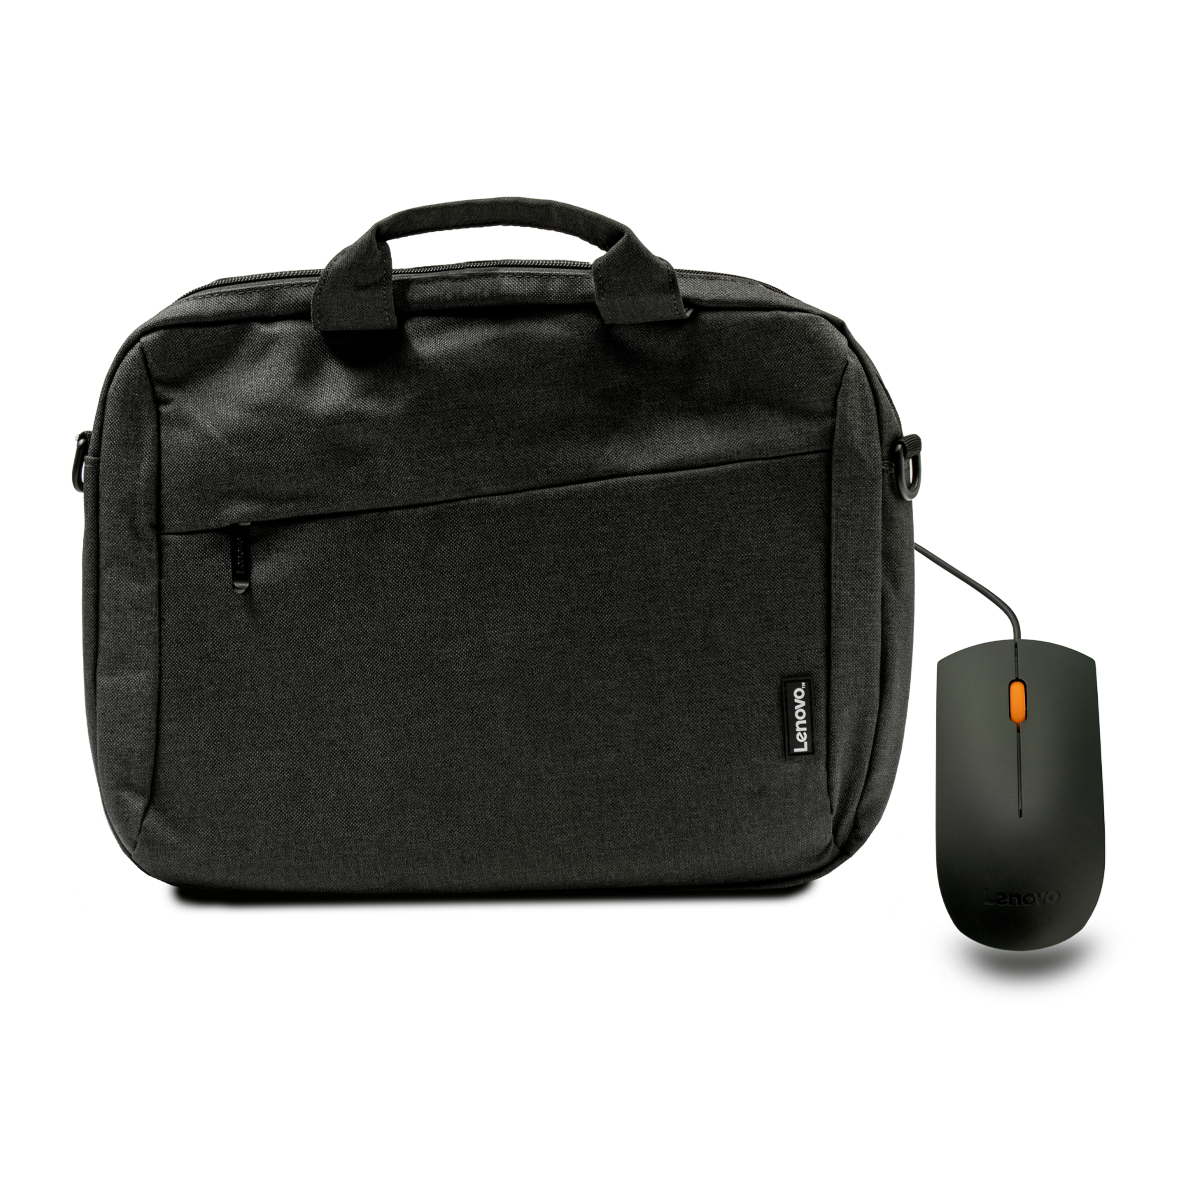 کیف لپ تاپ لنوو مناسب برای لپ تاپ 15.6 اینچی به همراه موس باسیم لنوو مدل 300